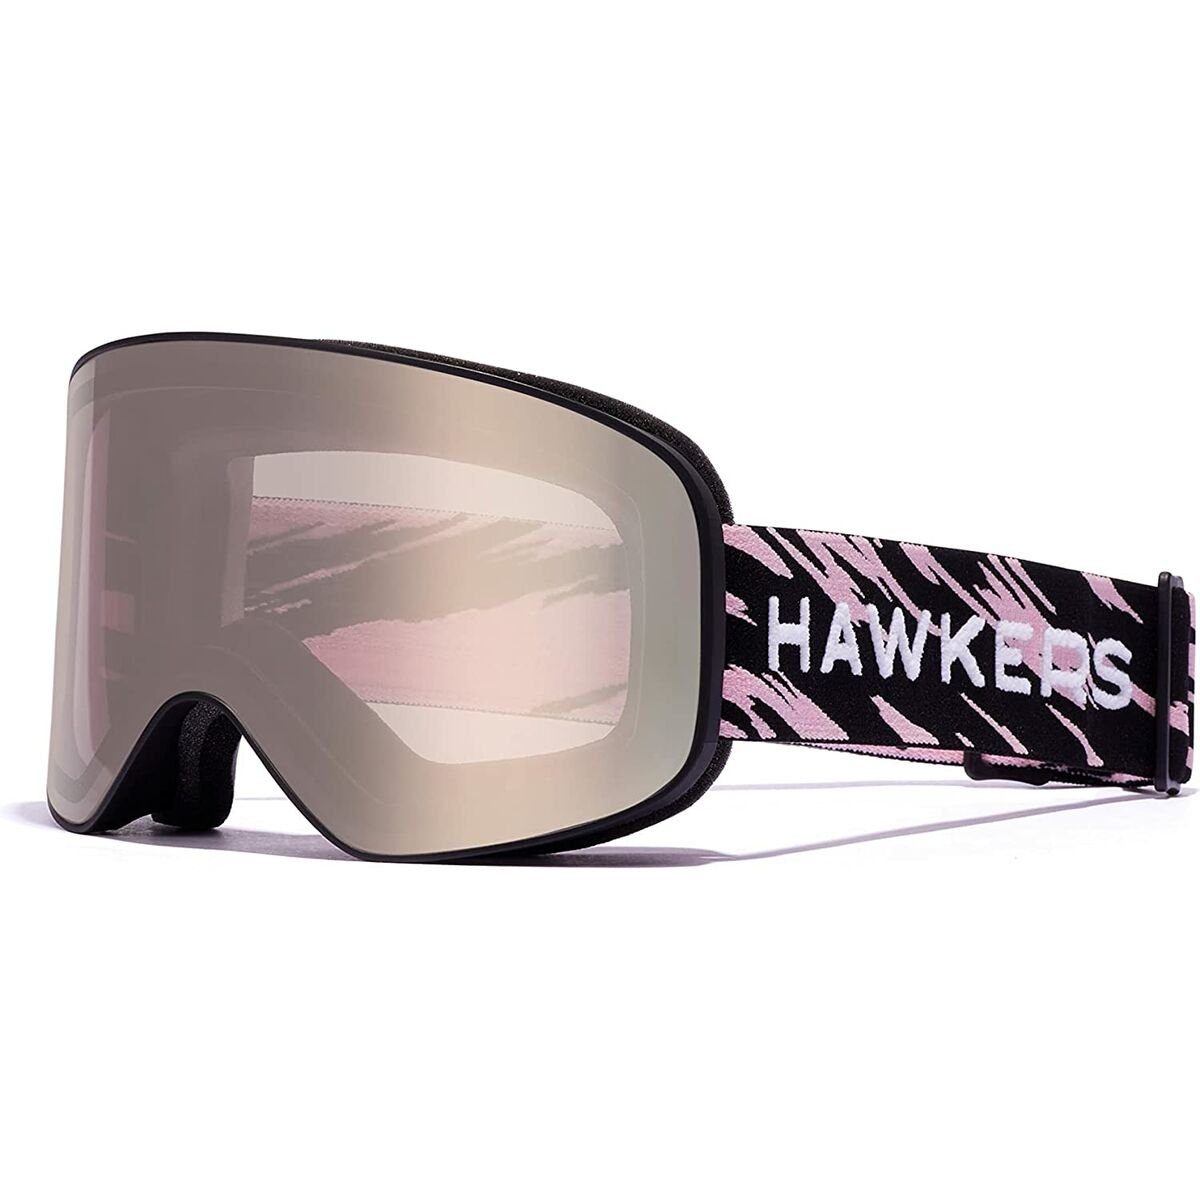 Hawkers Skibrille | Brillen